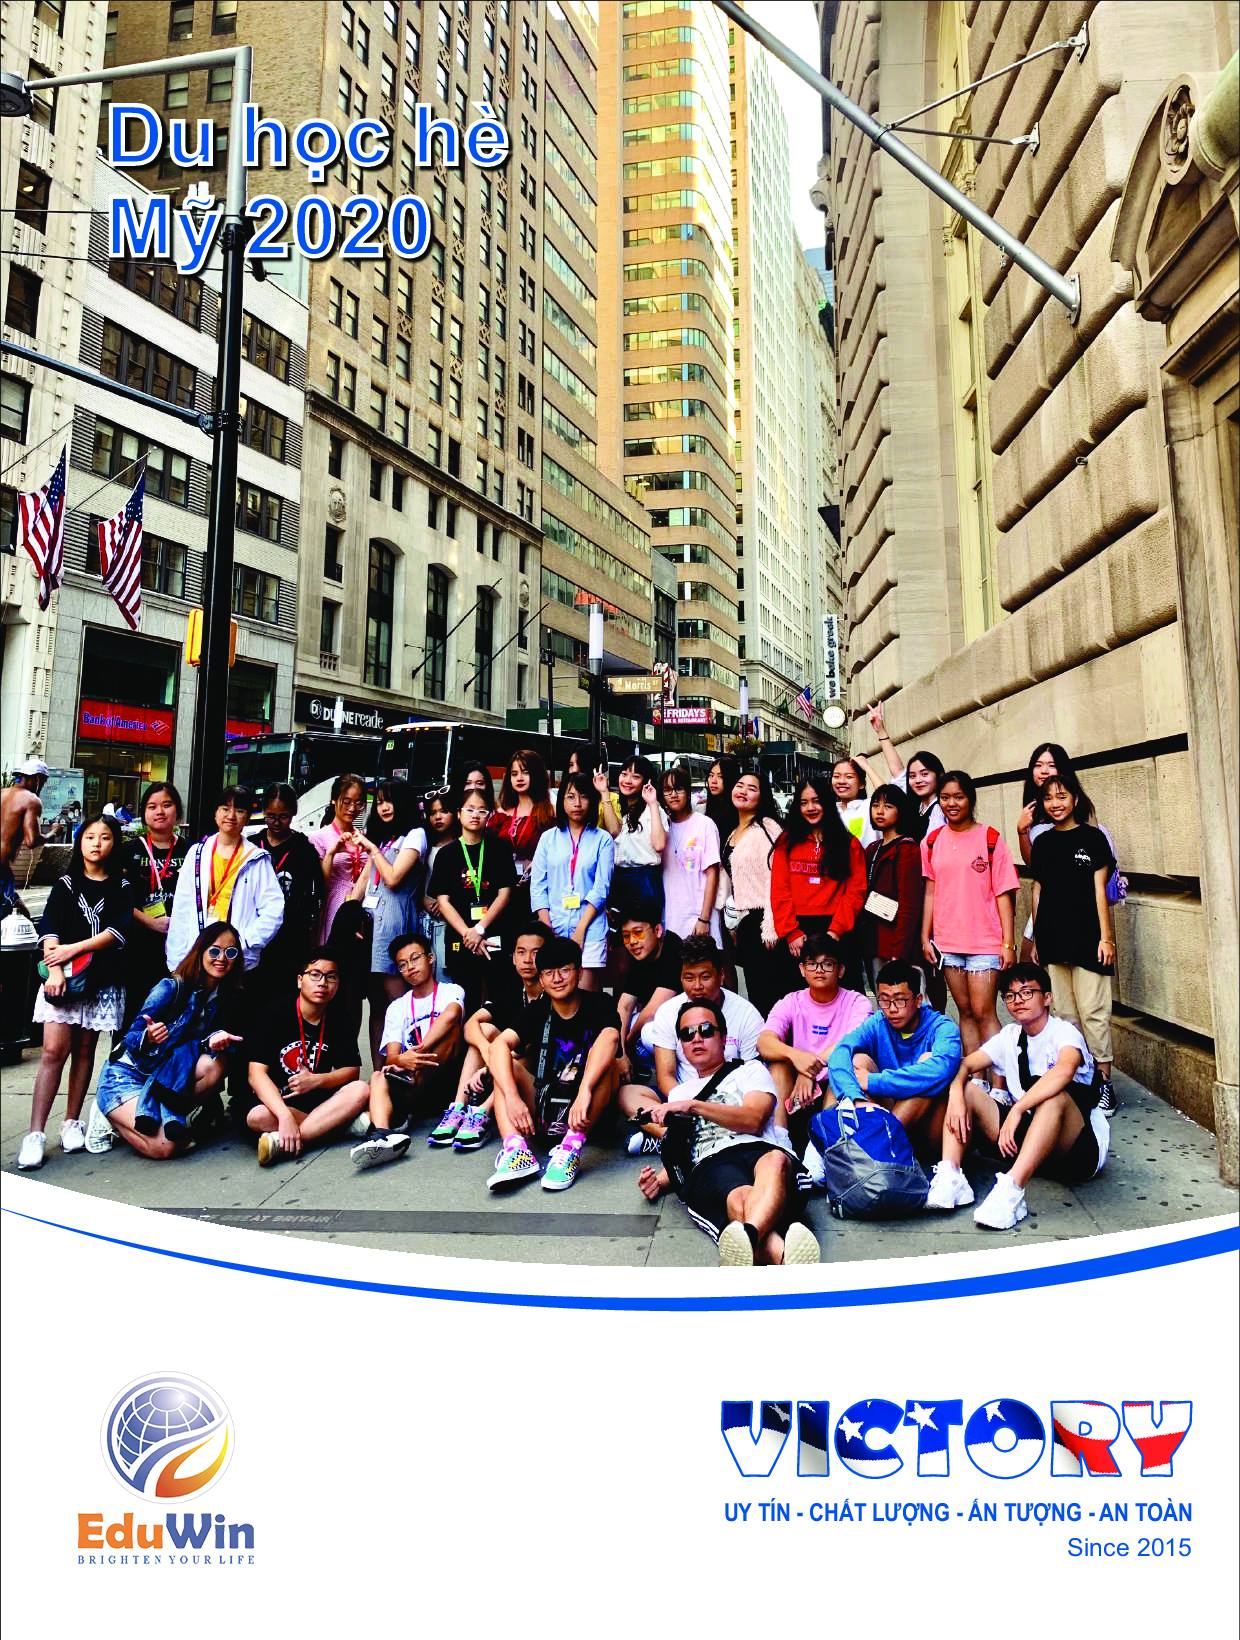 Chương trình du học hè trải nghiệm Mỹ Victory 2020, đang rất thu hút nhiều em học sinh tham gia